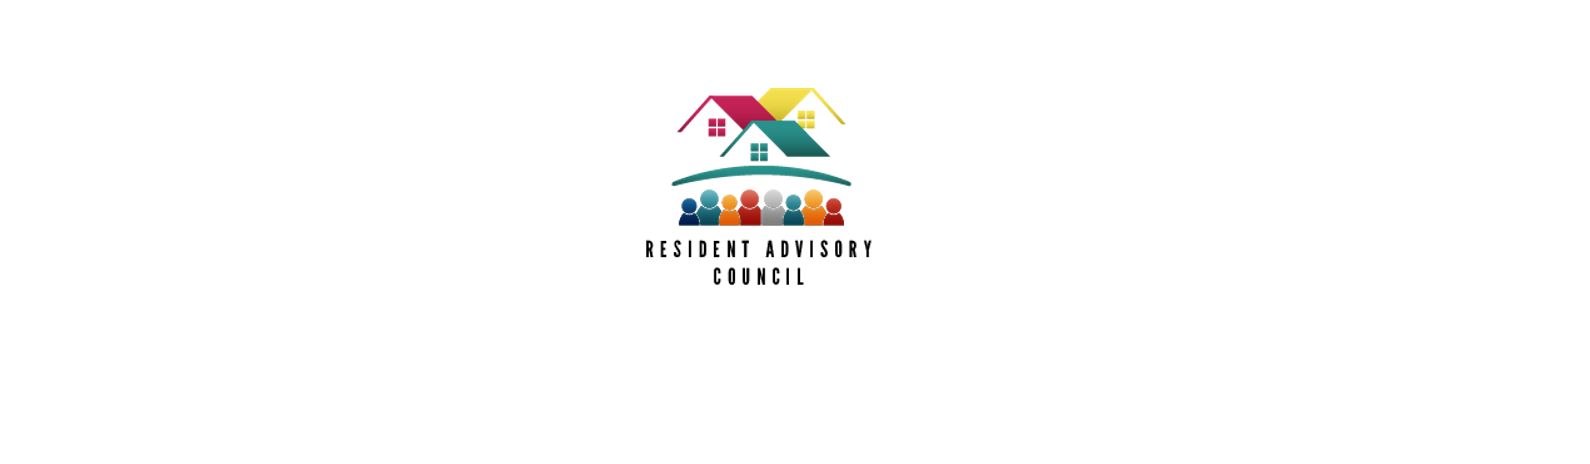 El Consejo Asesor de Residentes de Central Providence Opportunities publica la convocatoria para la solicitud de subvenciones de proyectos dirigidos a los vecinos en Central Providence